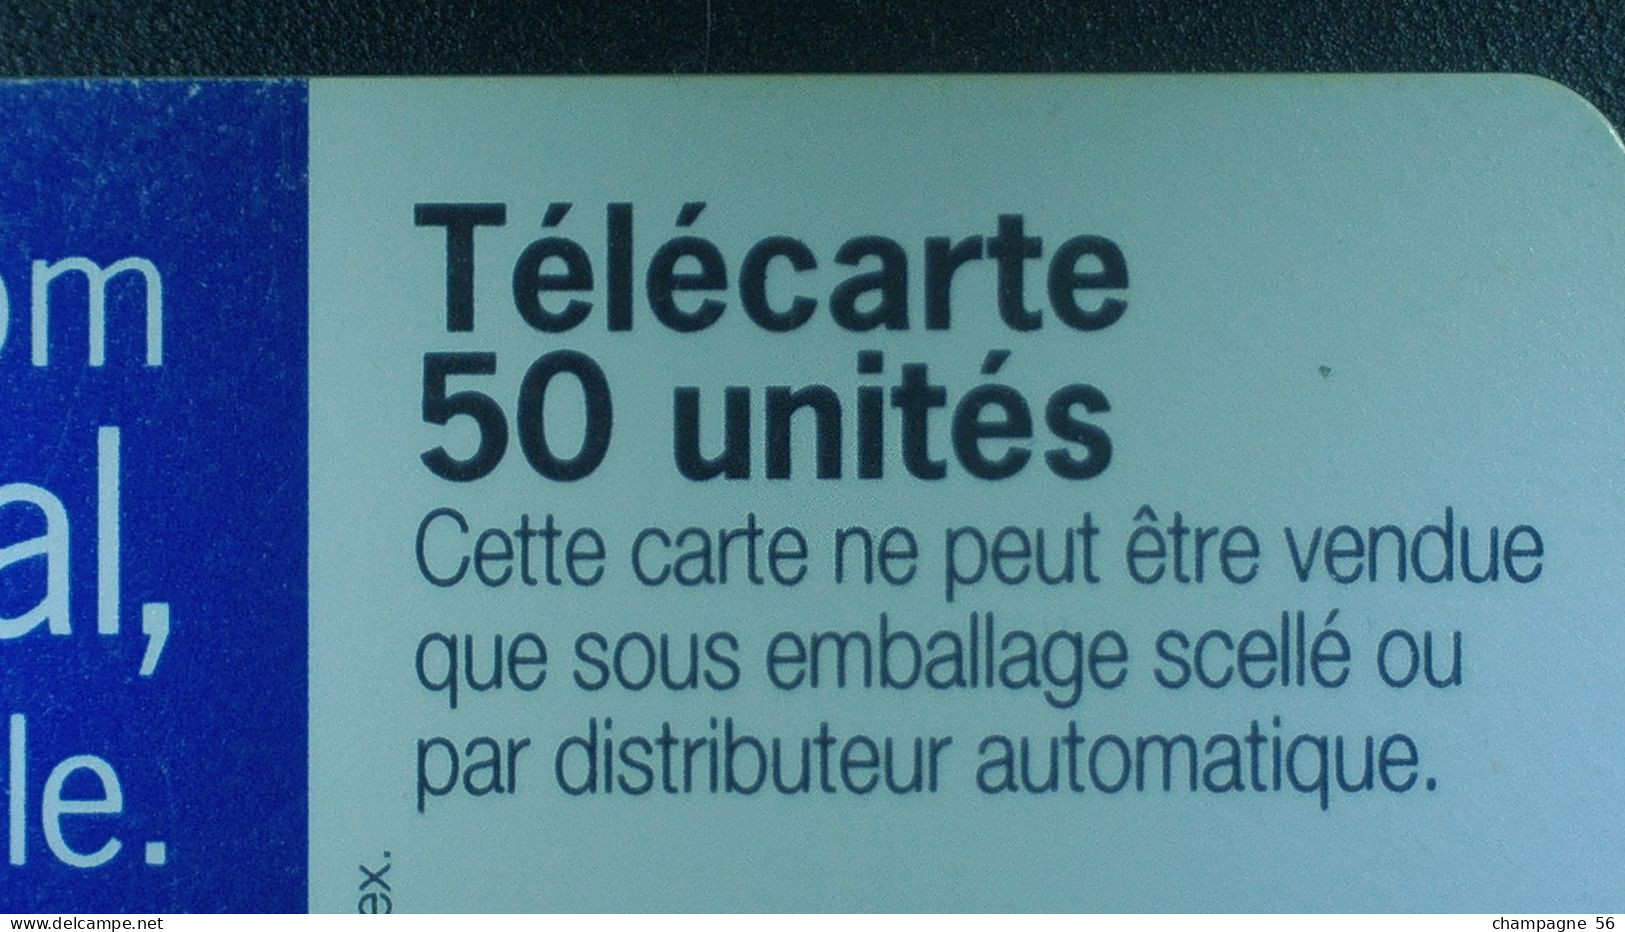 VARIÉTÉS FRANCE 97 F784E 50 / 05/97  OB2  TOITS CAPITAL FRANCE TELECOM  50 UNITES UTILISÉE